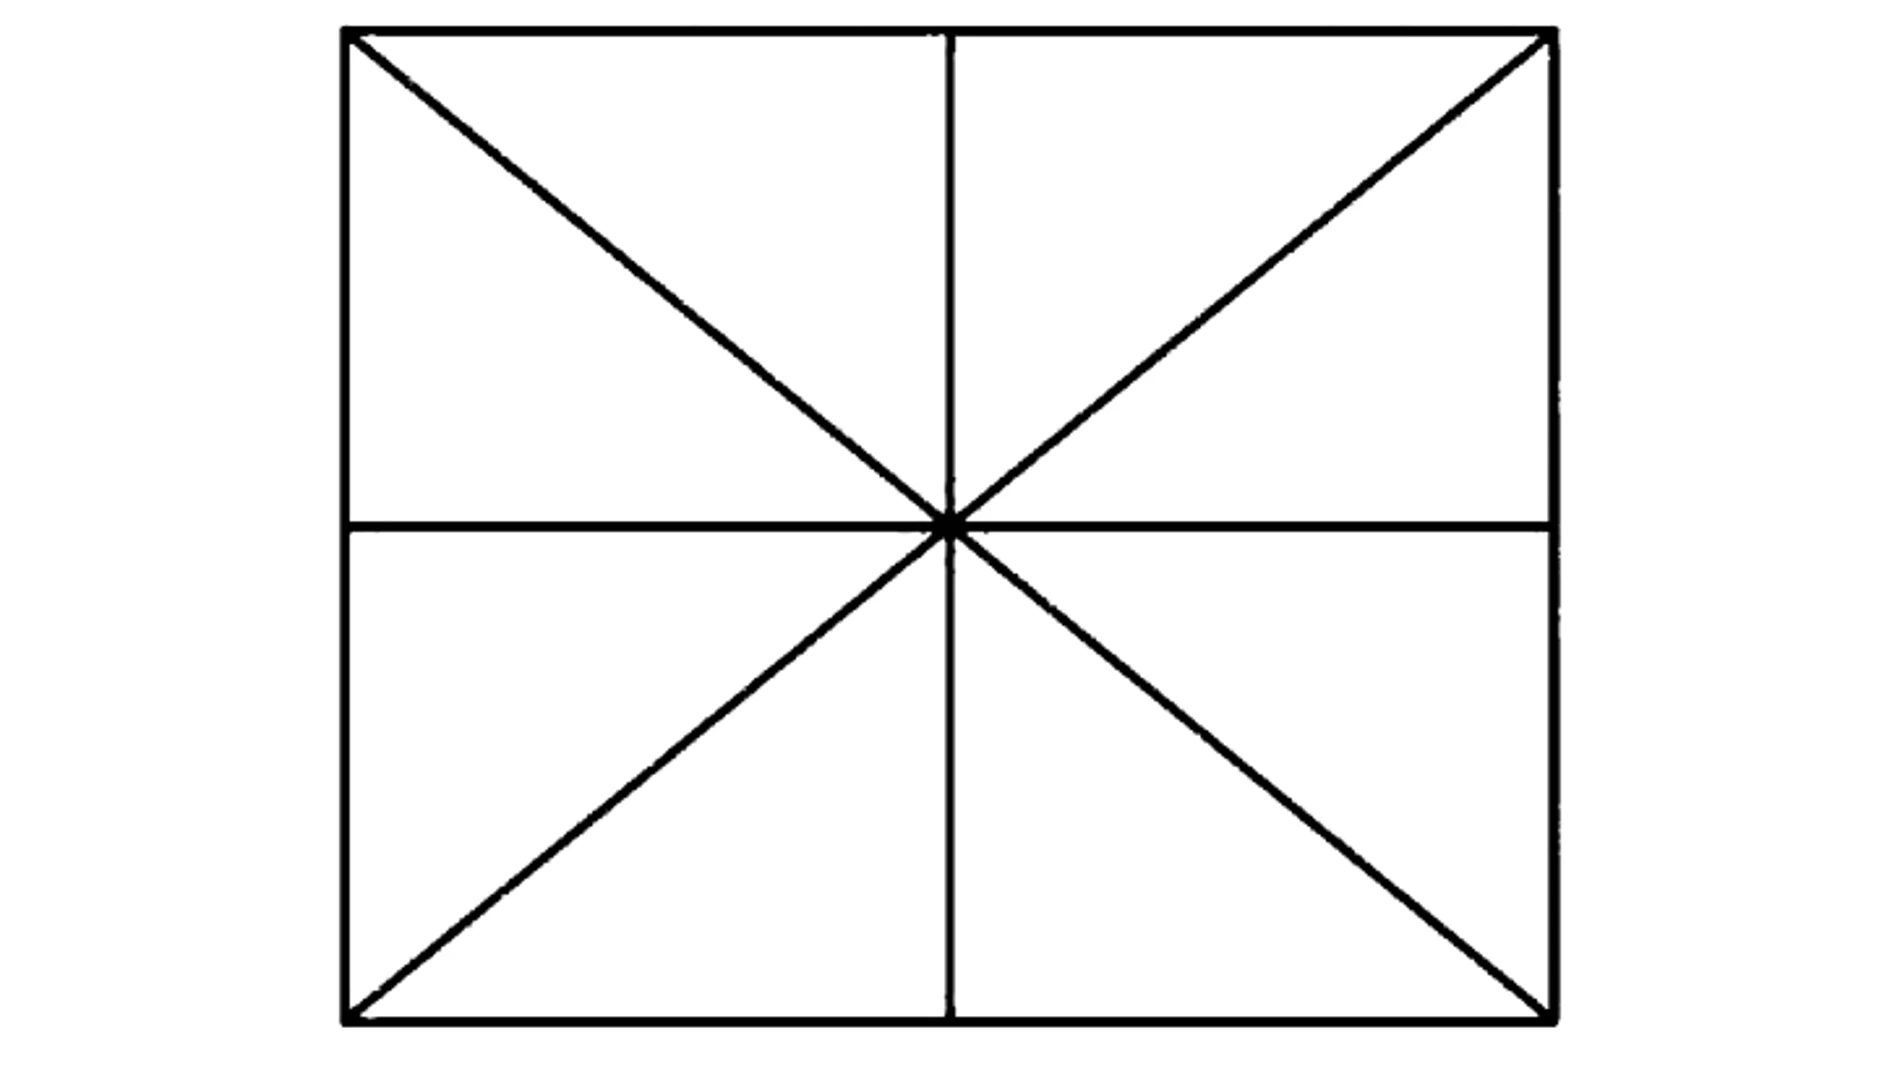 Este acertijo consiste en contar el número de triángulos en una imagen en un minuto